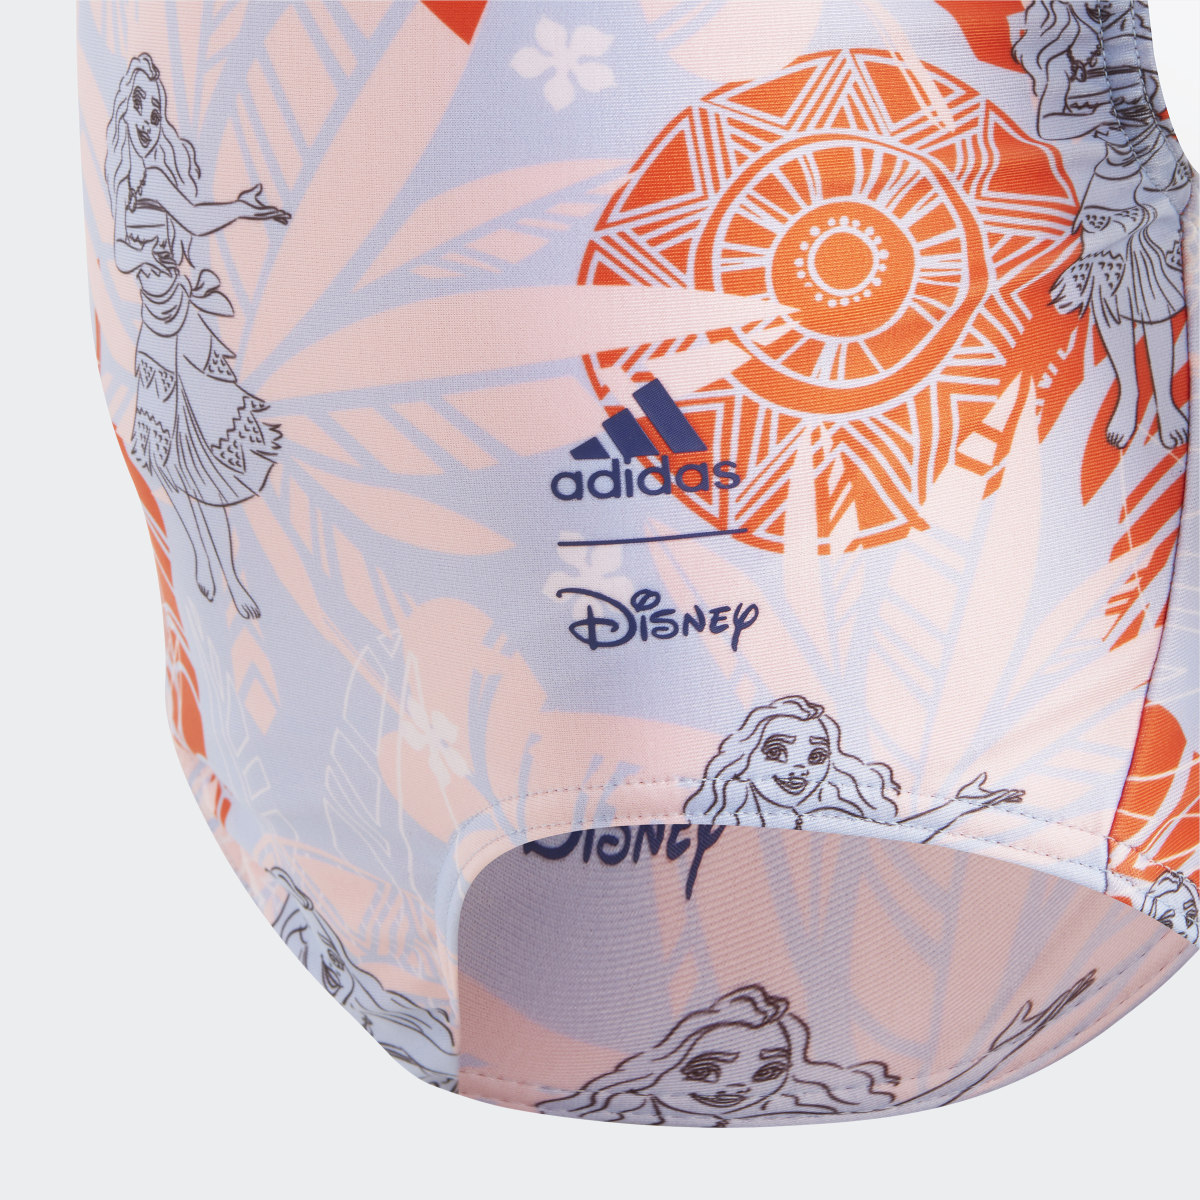 Adidas Fato de Banho Vaiana adidas x Disney. 5